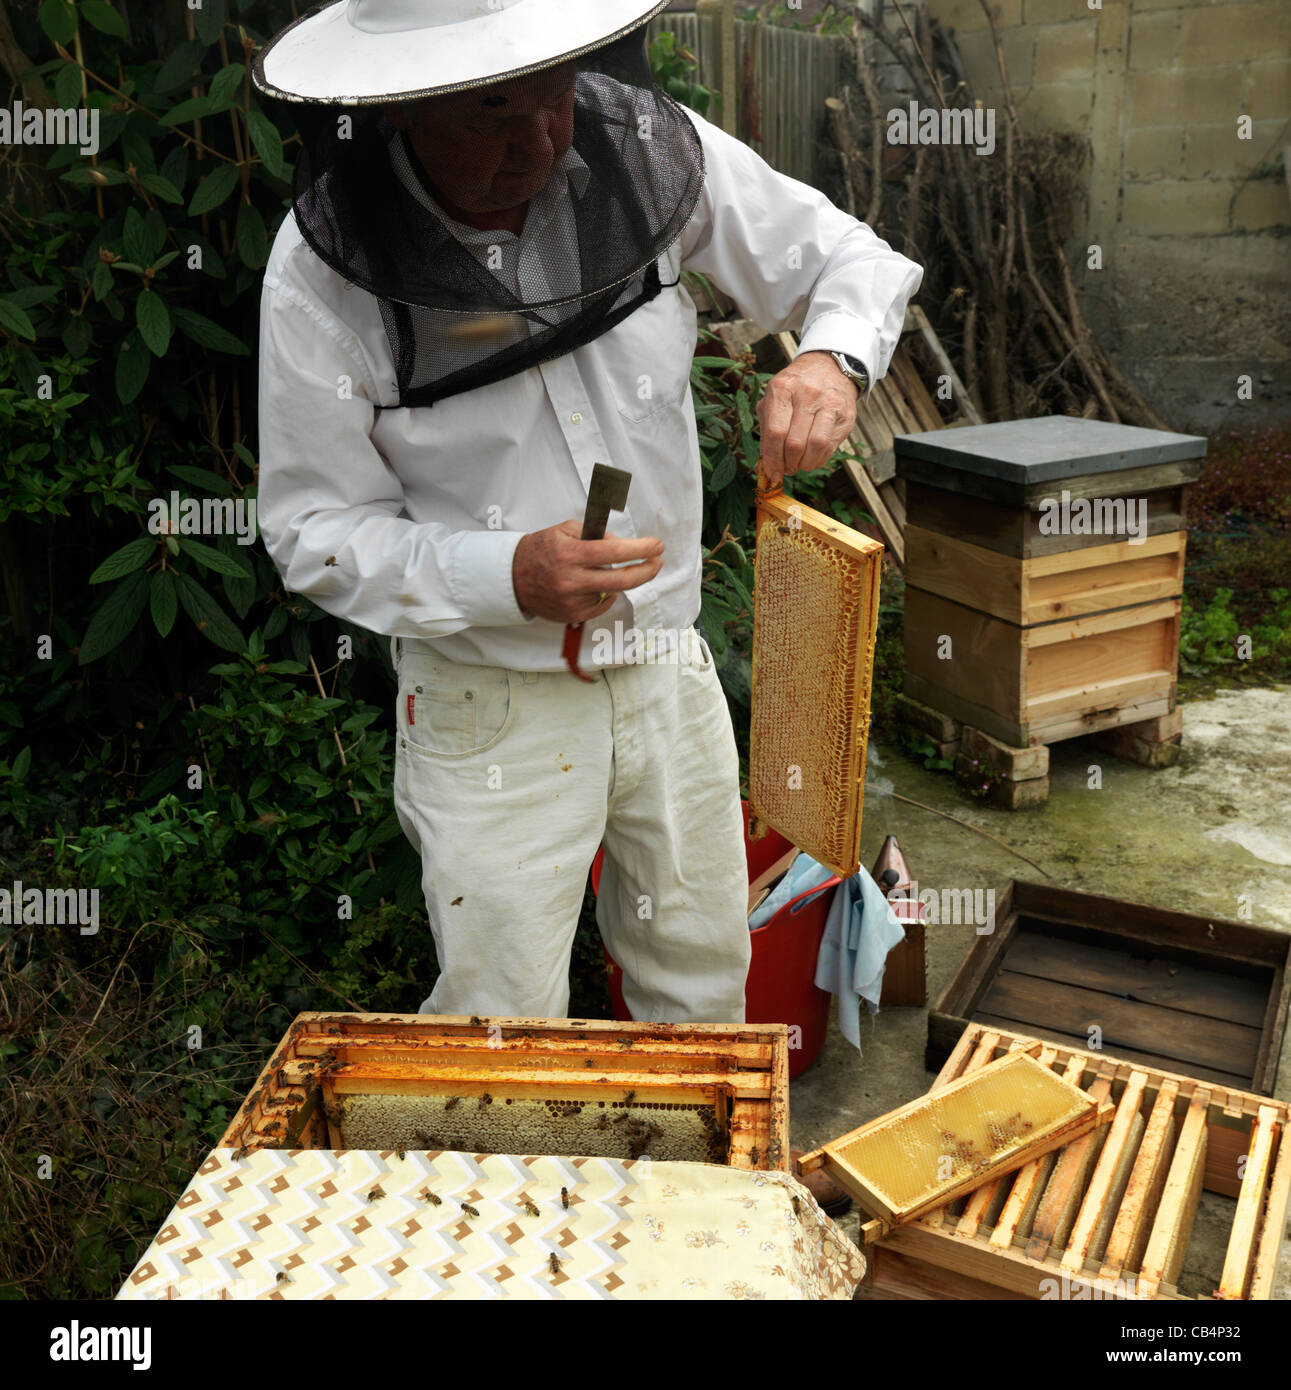 Apiculteur dépose plein cadre de la ruche, la récolte du miel Banque D'Images